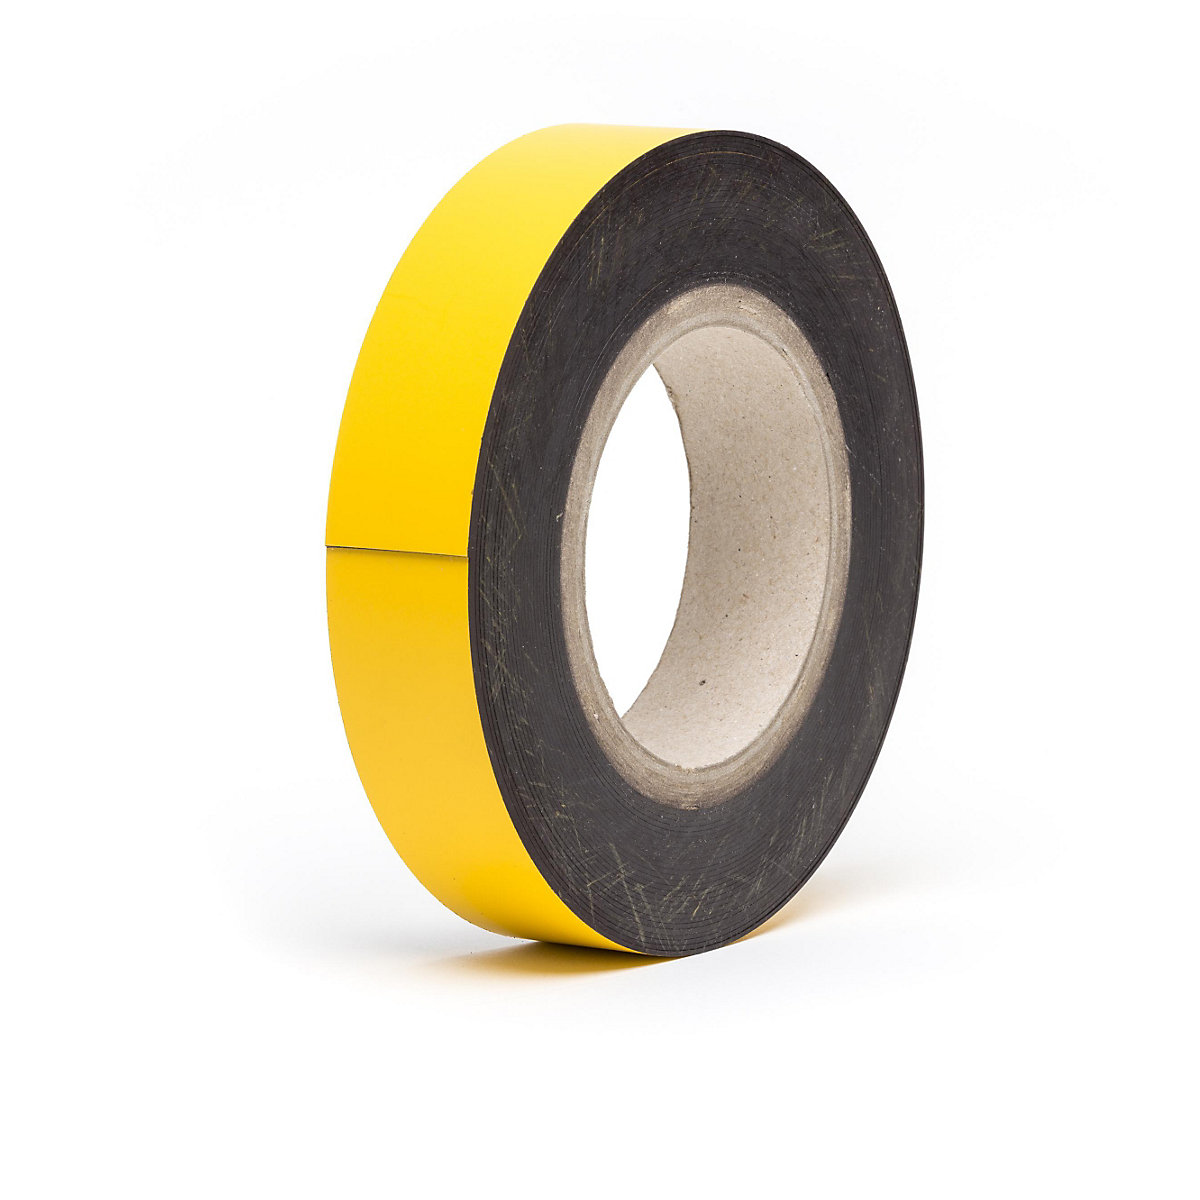 Rótulos magnéticos para almacén, mercancía en rollo, amarillo, altura 25 mm, longitud de rollo 10 m-9